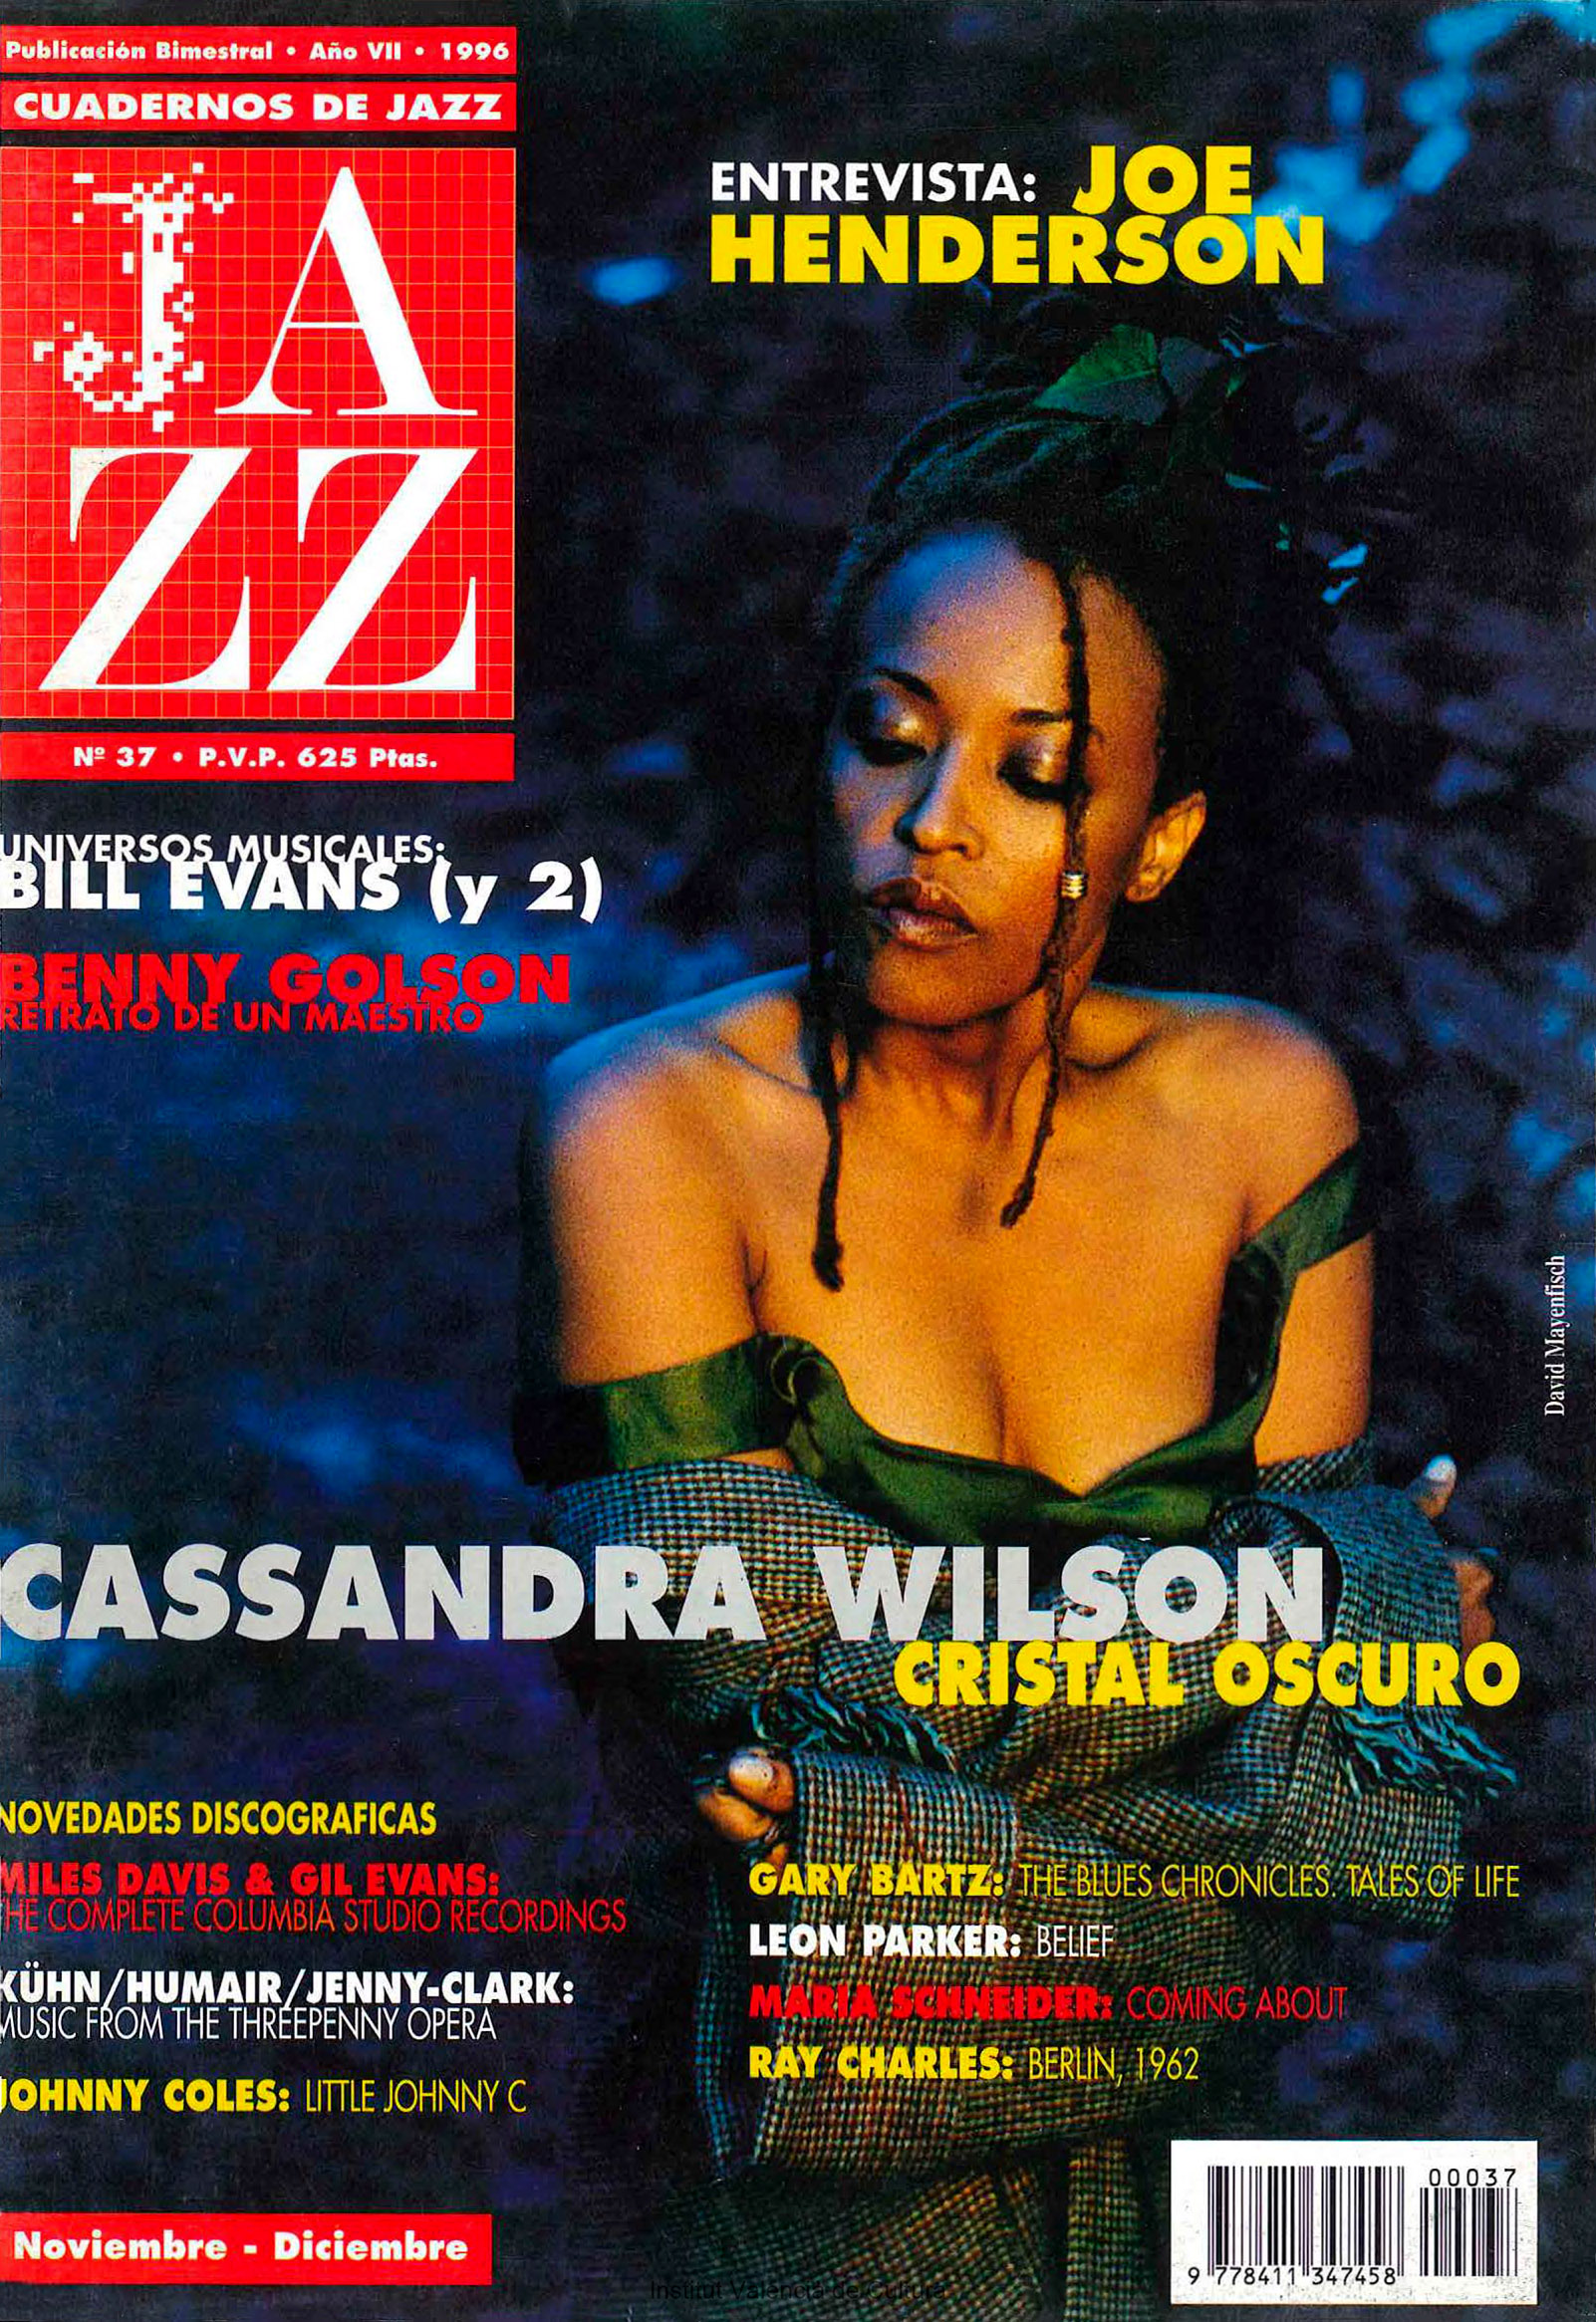 Cubierta del número 37 de la revista Cuadernos de Jazz